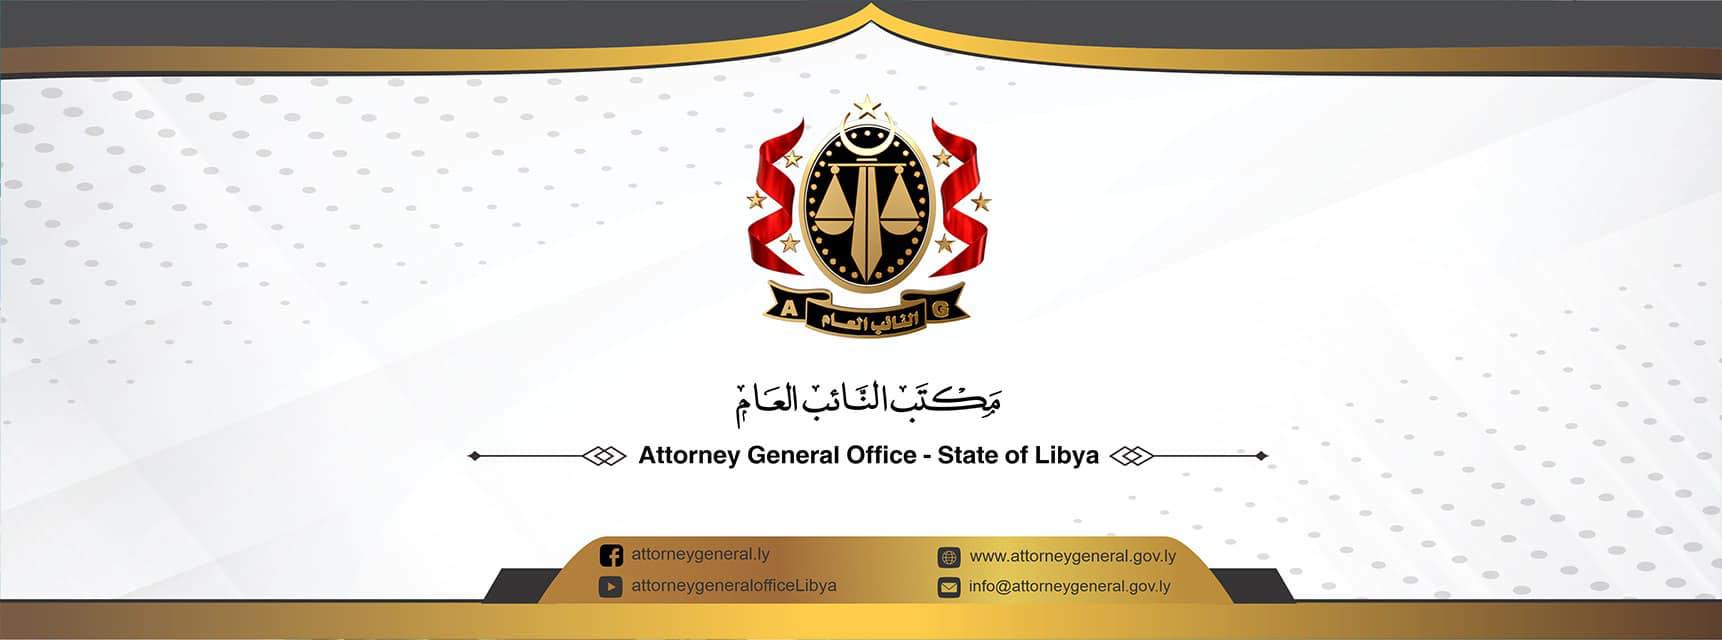 النيابة العامة تأمر بحبس القائم السابق بأعمال بعثة دولة ليبيا لدى جمهورية البرتغال ، ورَقِيبٍ سابق على إدارة المال العام في البعثة .